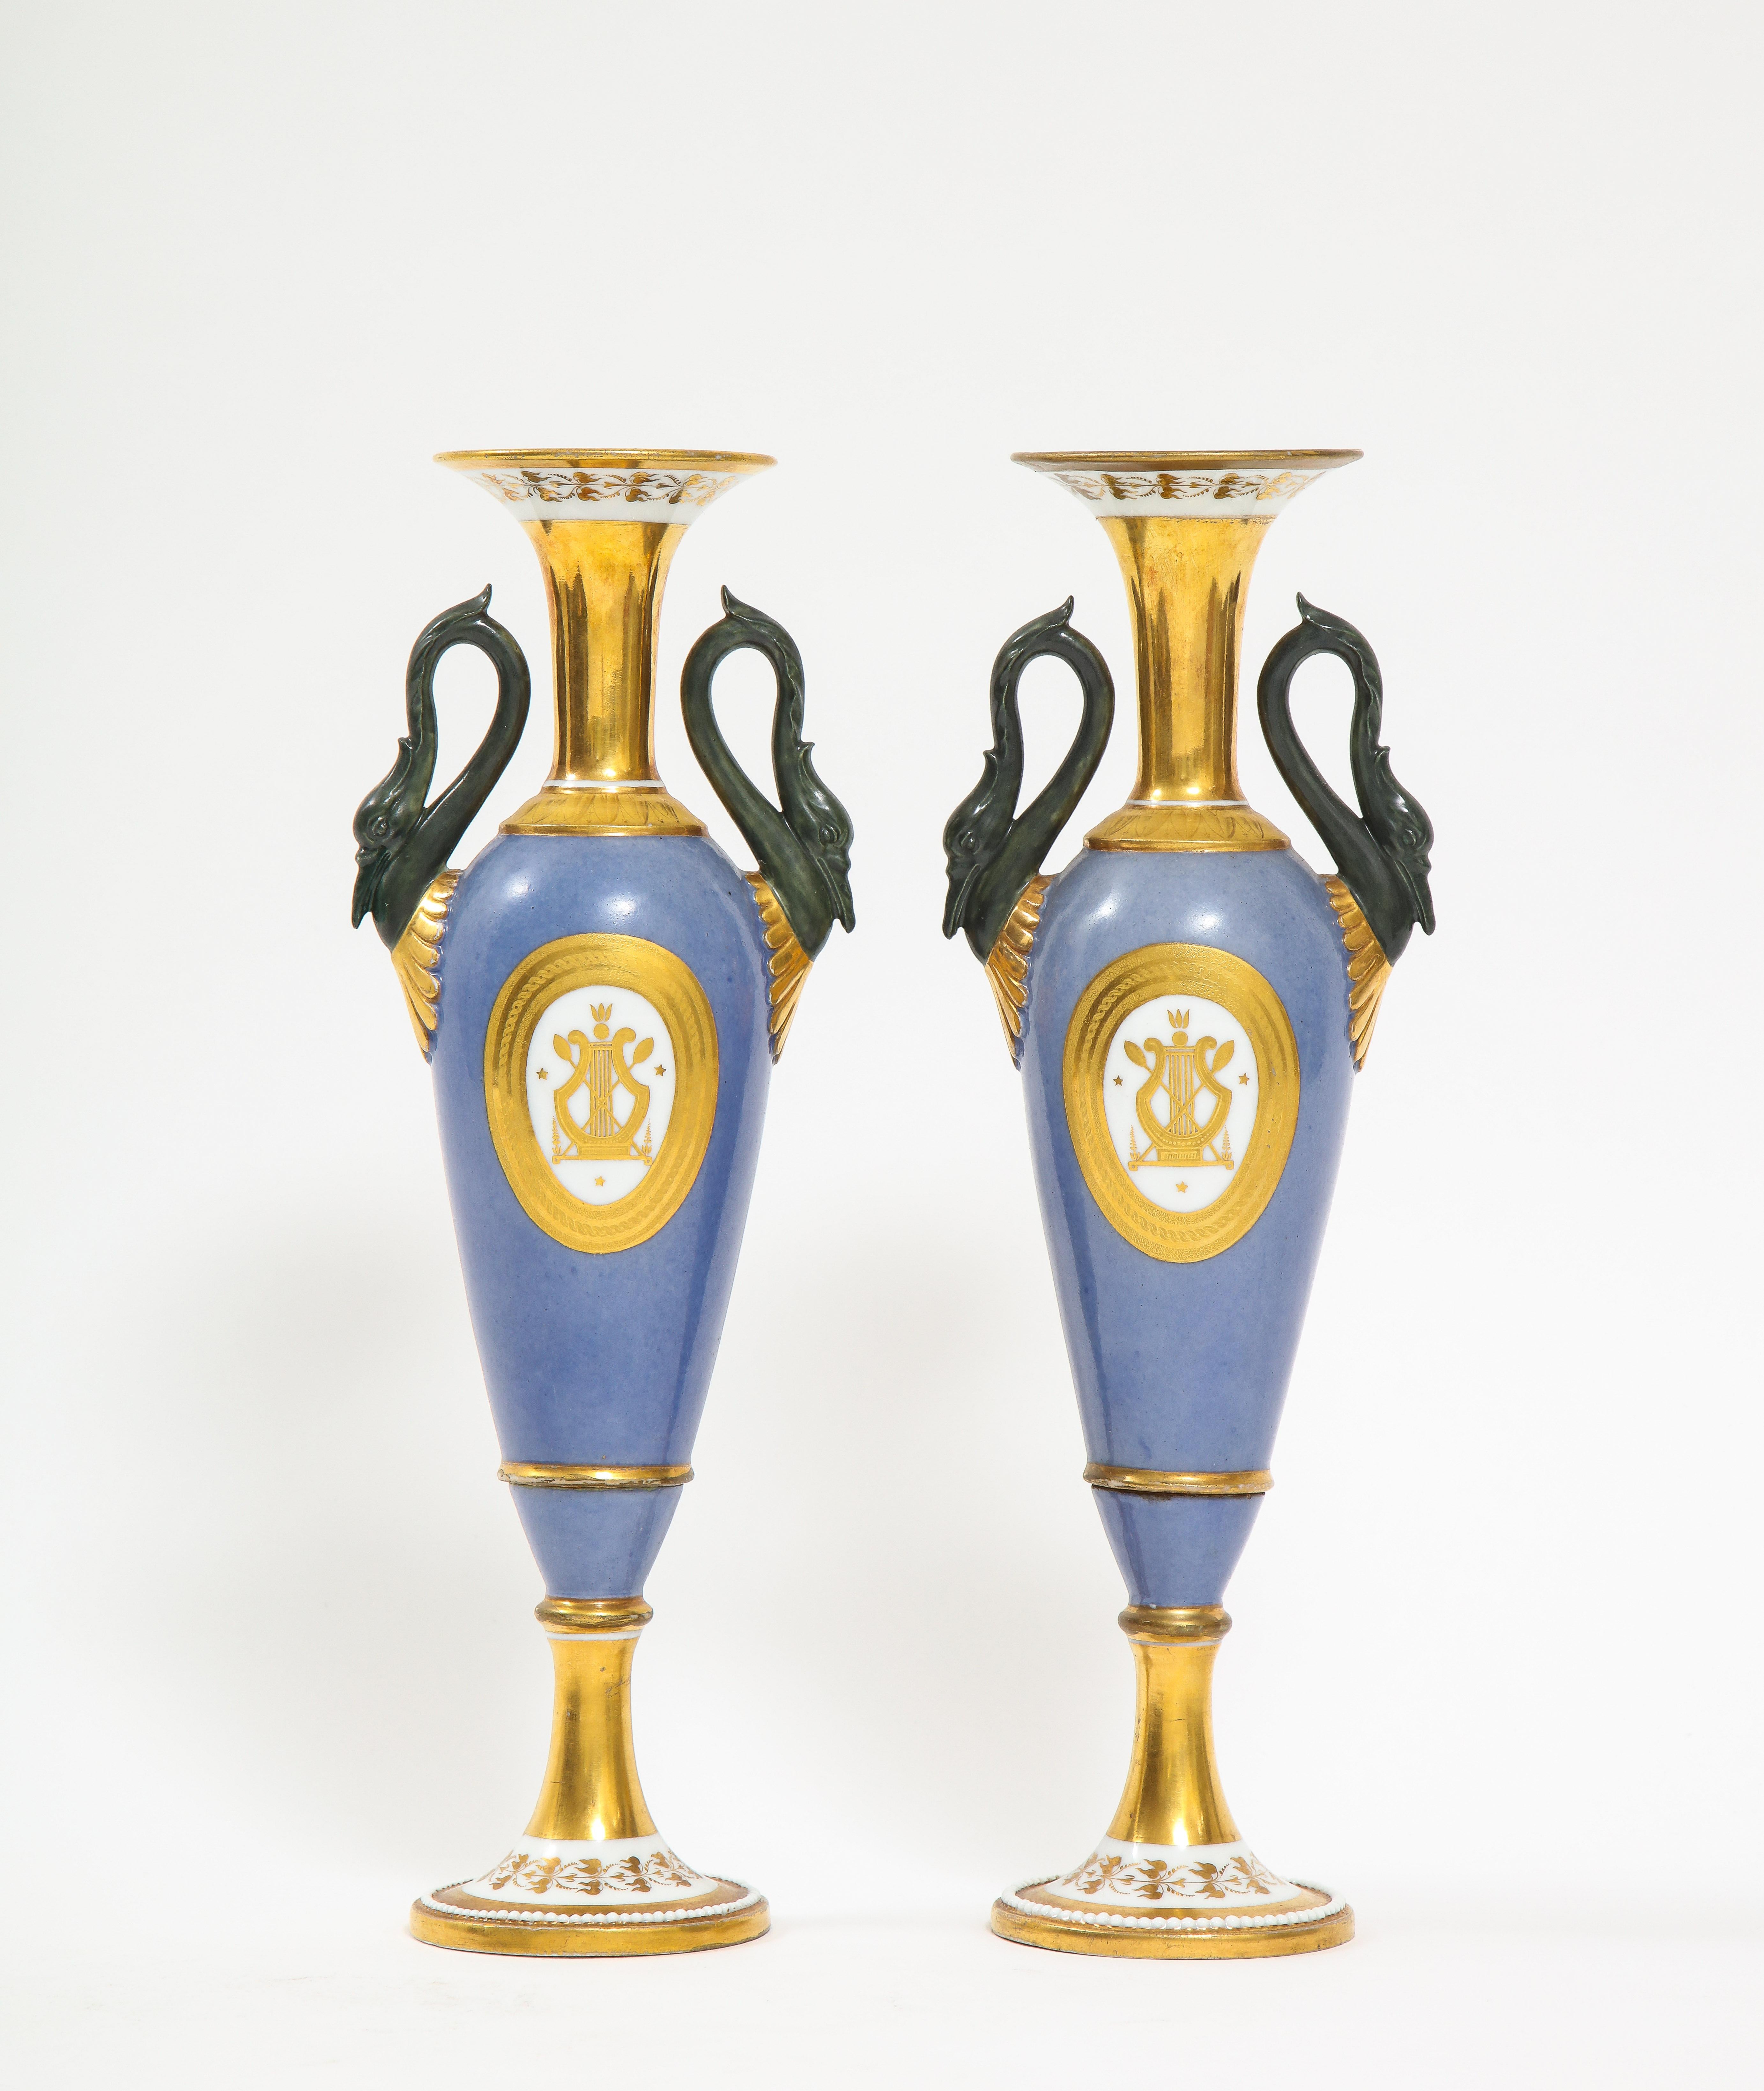 Ein feines Paar französischer Vasen mit Schwanenhenkel aus dem Empire des 19. Jahrhunderts aus altem Pariser Porzellan. Jede ist wunderschön handbemalt mit einem hellblauen Grund und zusätzlich mit 24-karätigen Goldakzenten um den Hals, die Griffe,